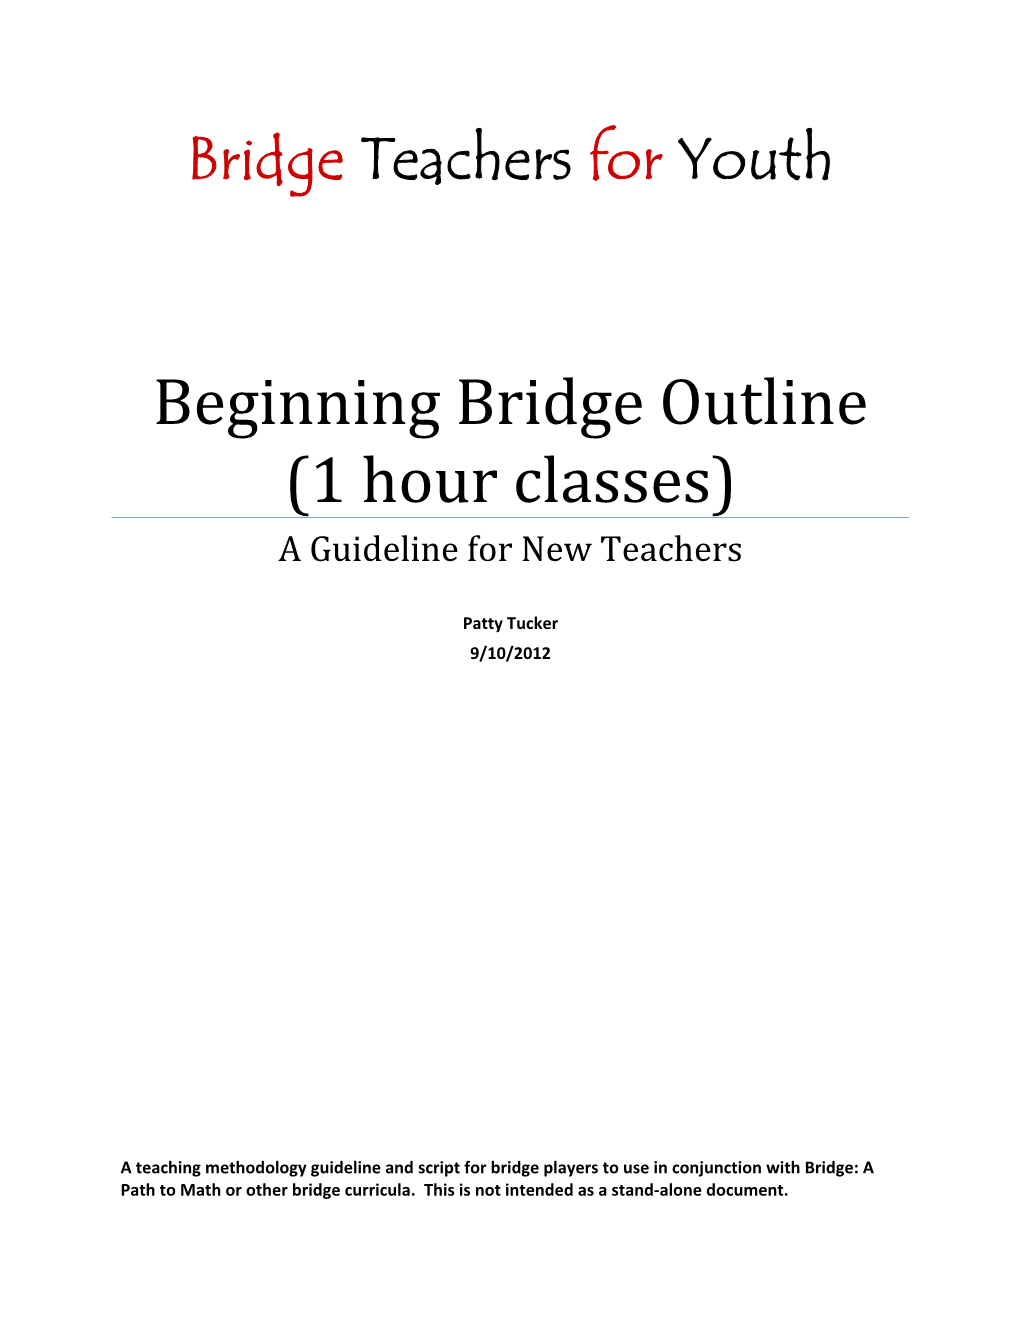 Beginning Bridge Outline (1 Hour Classes) a Guideline for New Teachers